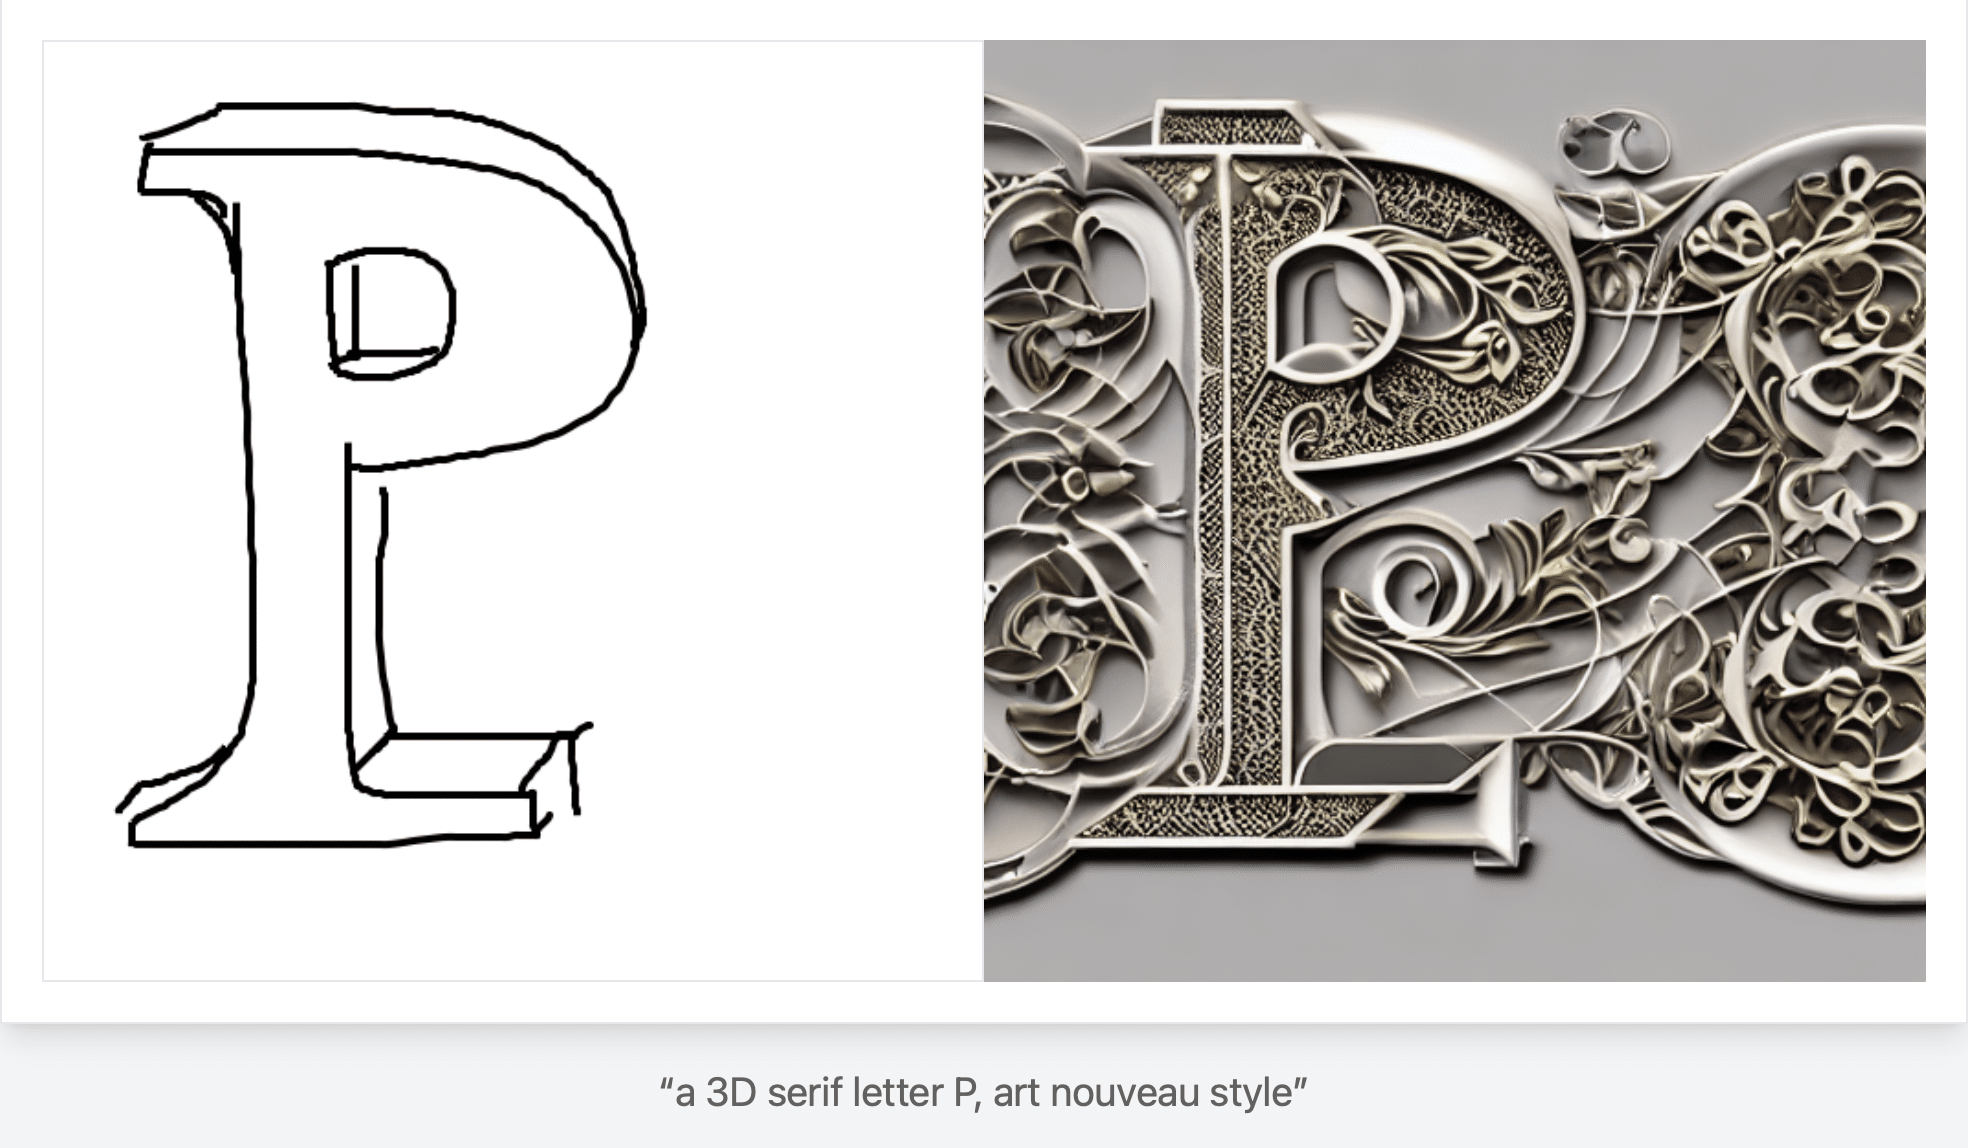 links sieht man ein skizziertes P in Serifenschriftk das rechts als 3D-Relief im Art Nouveau Style umgesetzt wurde